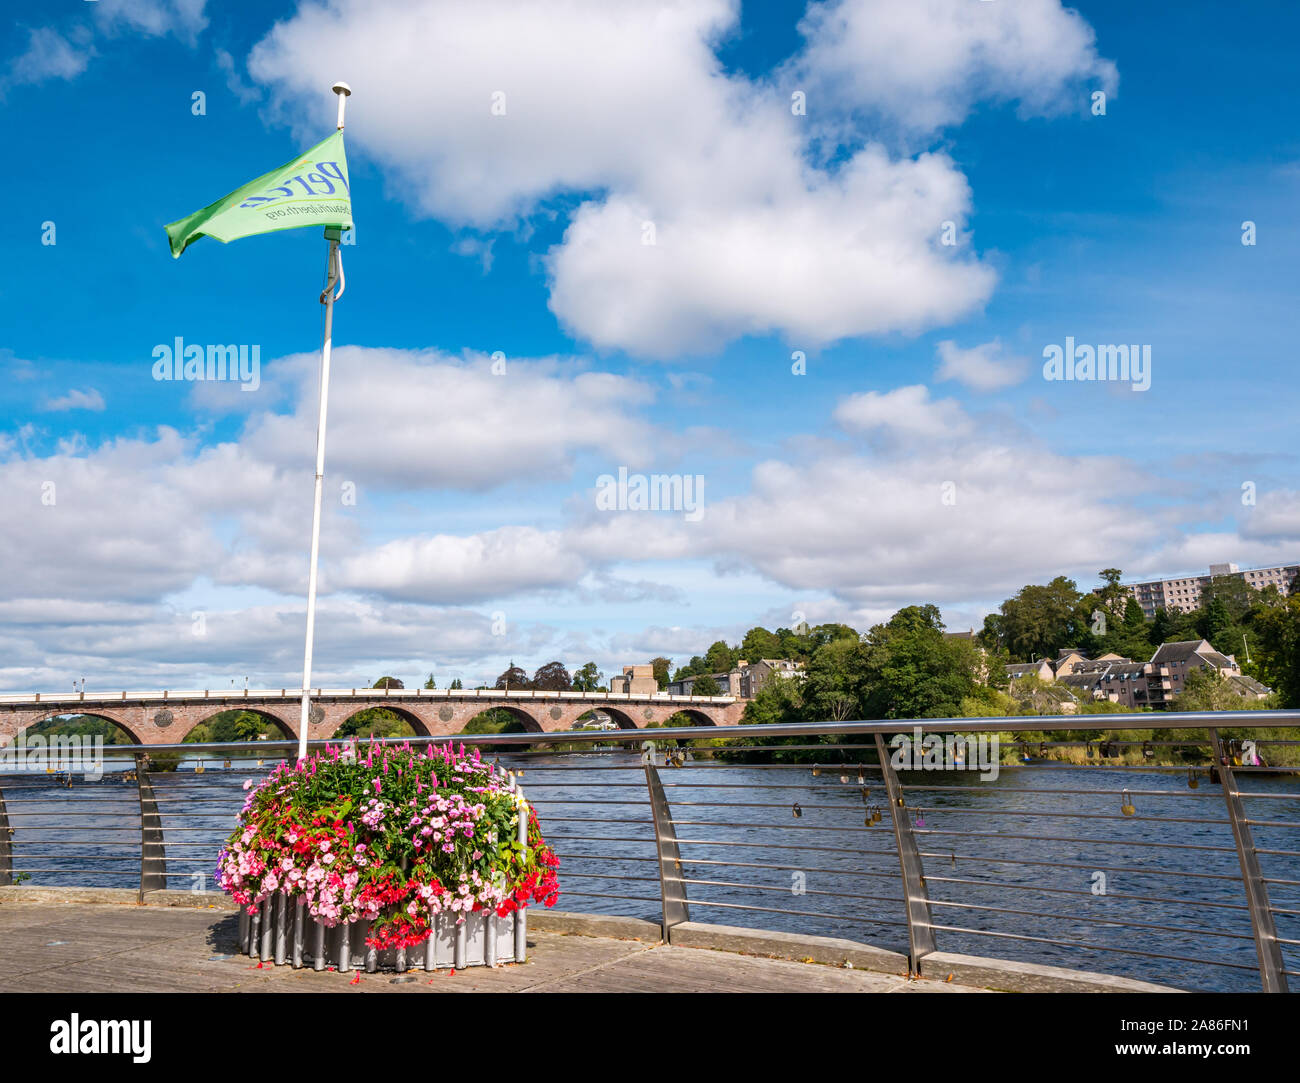 Vista del río Tay & West Bridge, con hermosa bandera de Perth y cuadro de flores plantadas en un día soleado, la ciudad de Perth, en Escocia, Reino Unido Foto de stock